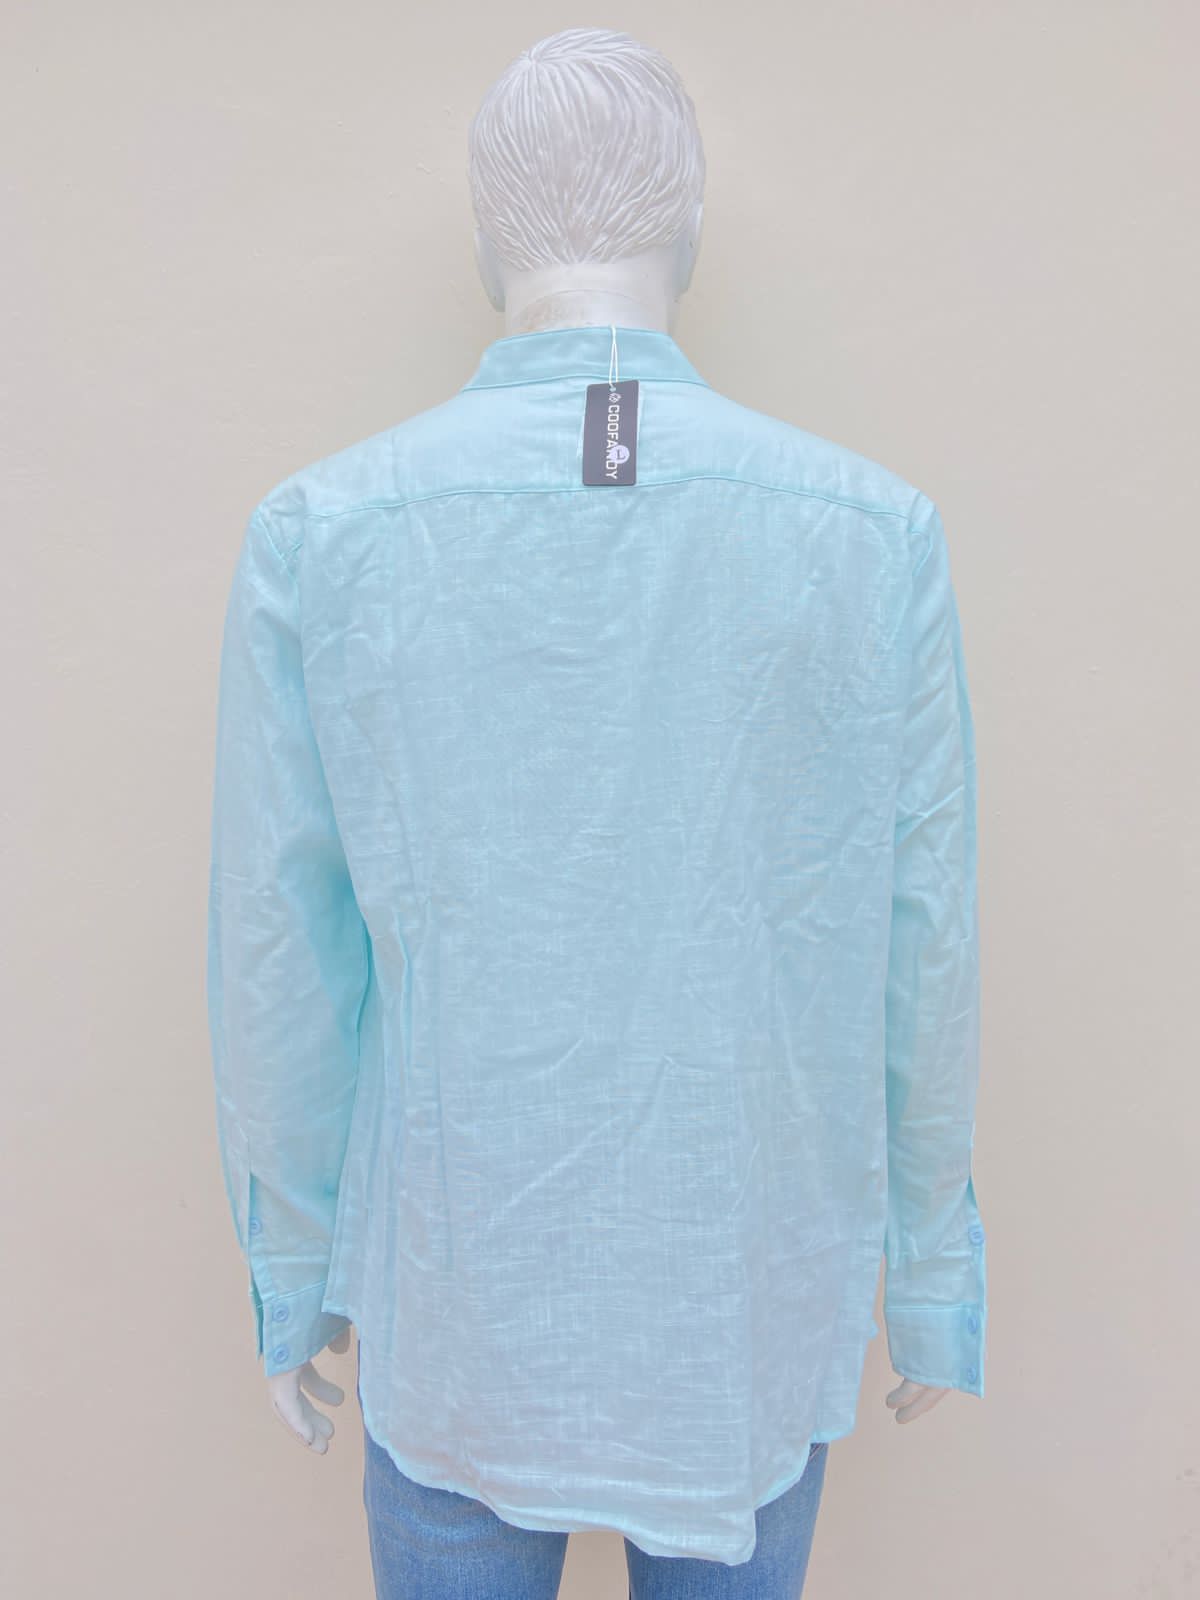 Camisa Coofandy original, azul claro sin cuello.